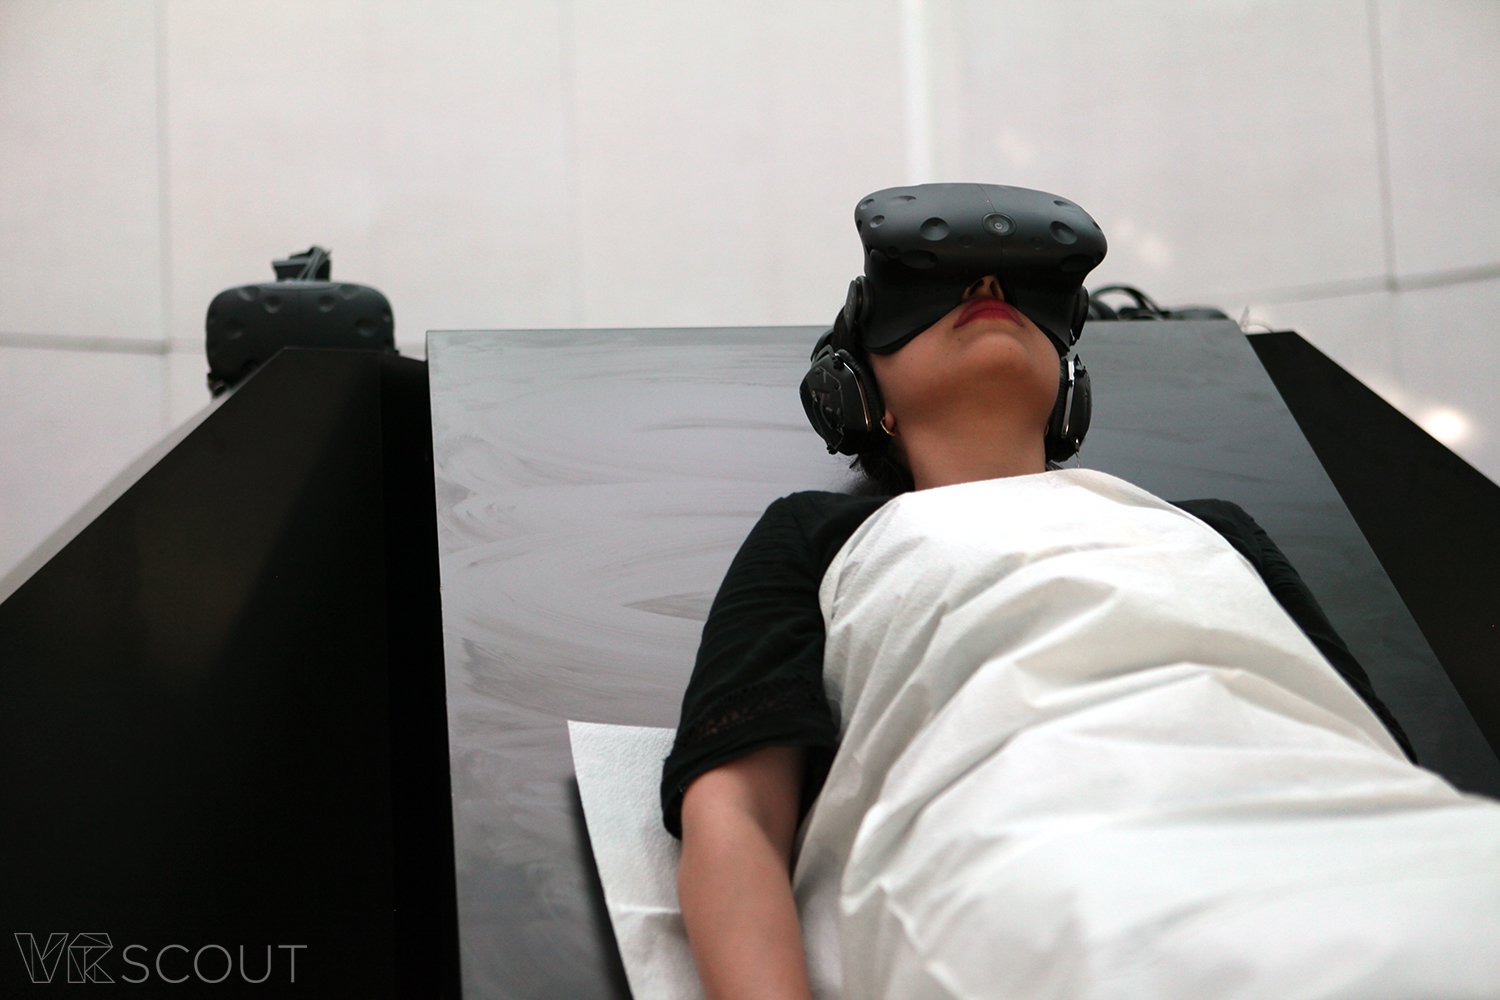 Самая страшная вещь на Comic-Con: VR эксперимент по «Американской истории ужасов»